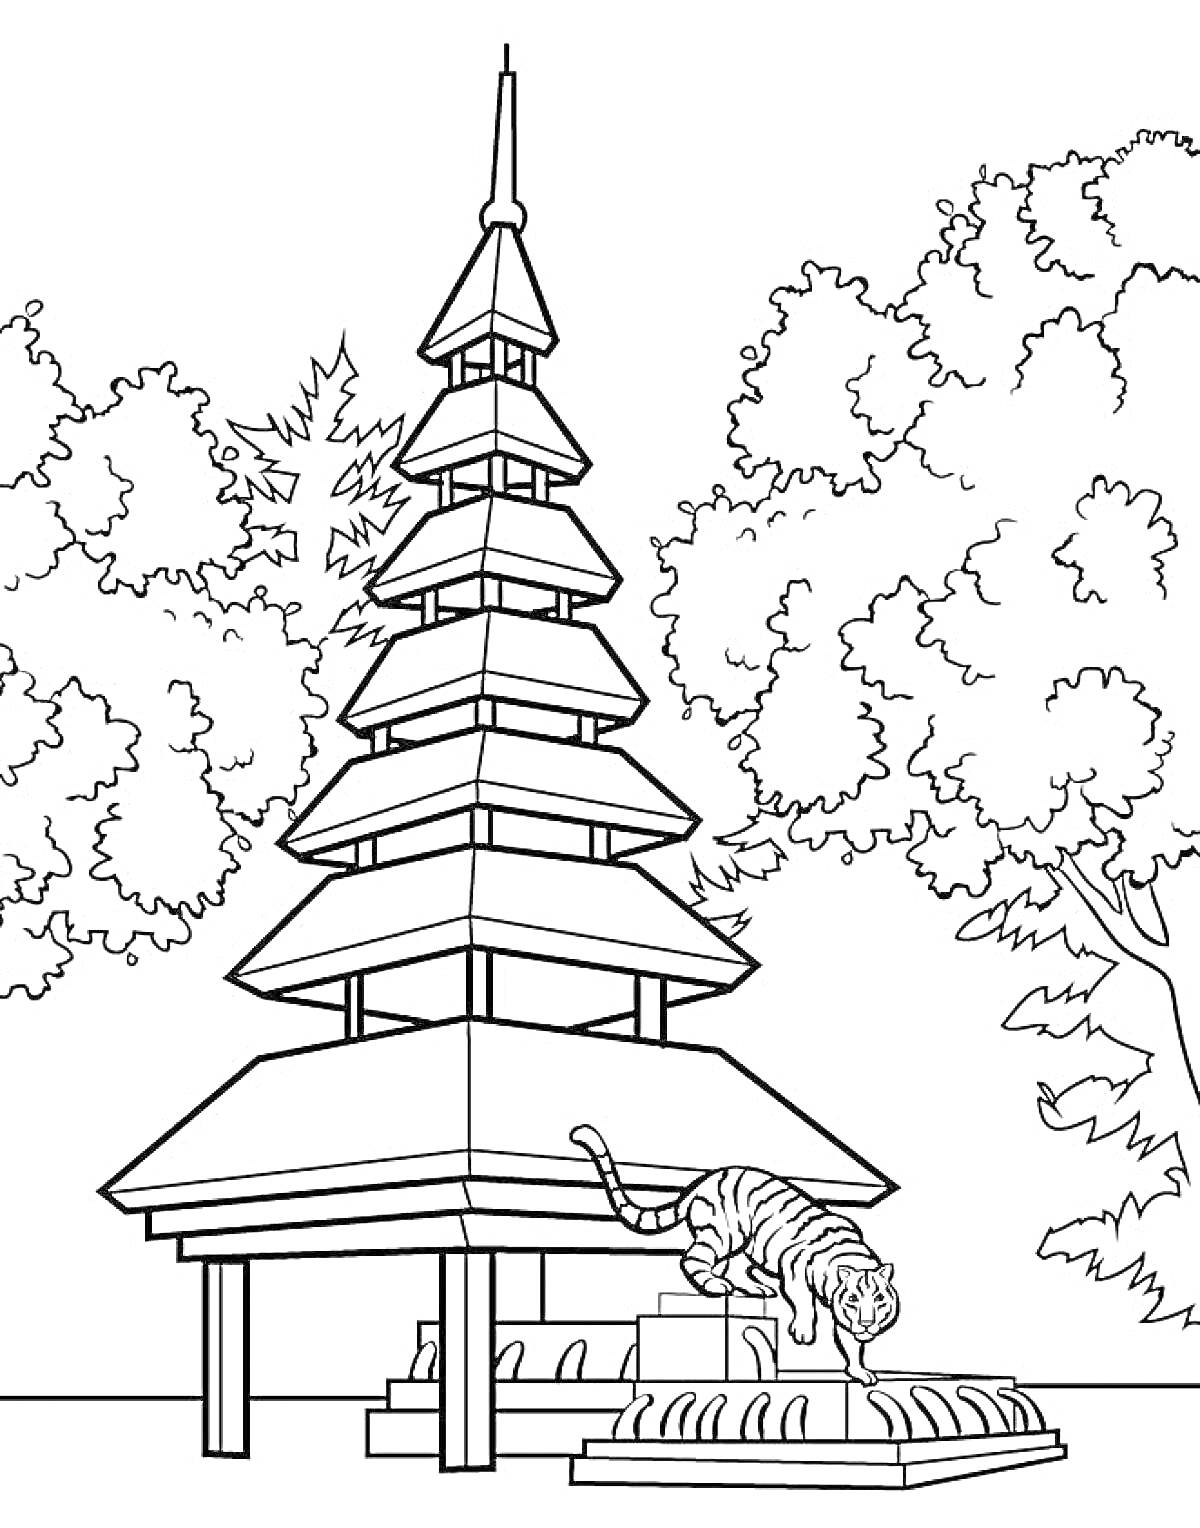 Раскраска Пагода и тигр у фонтана, окруженные деревьями